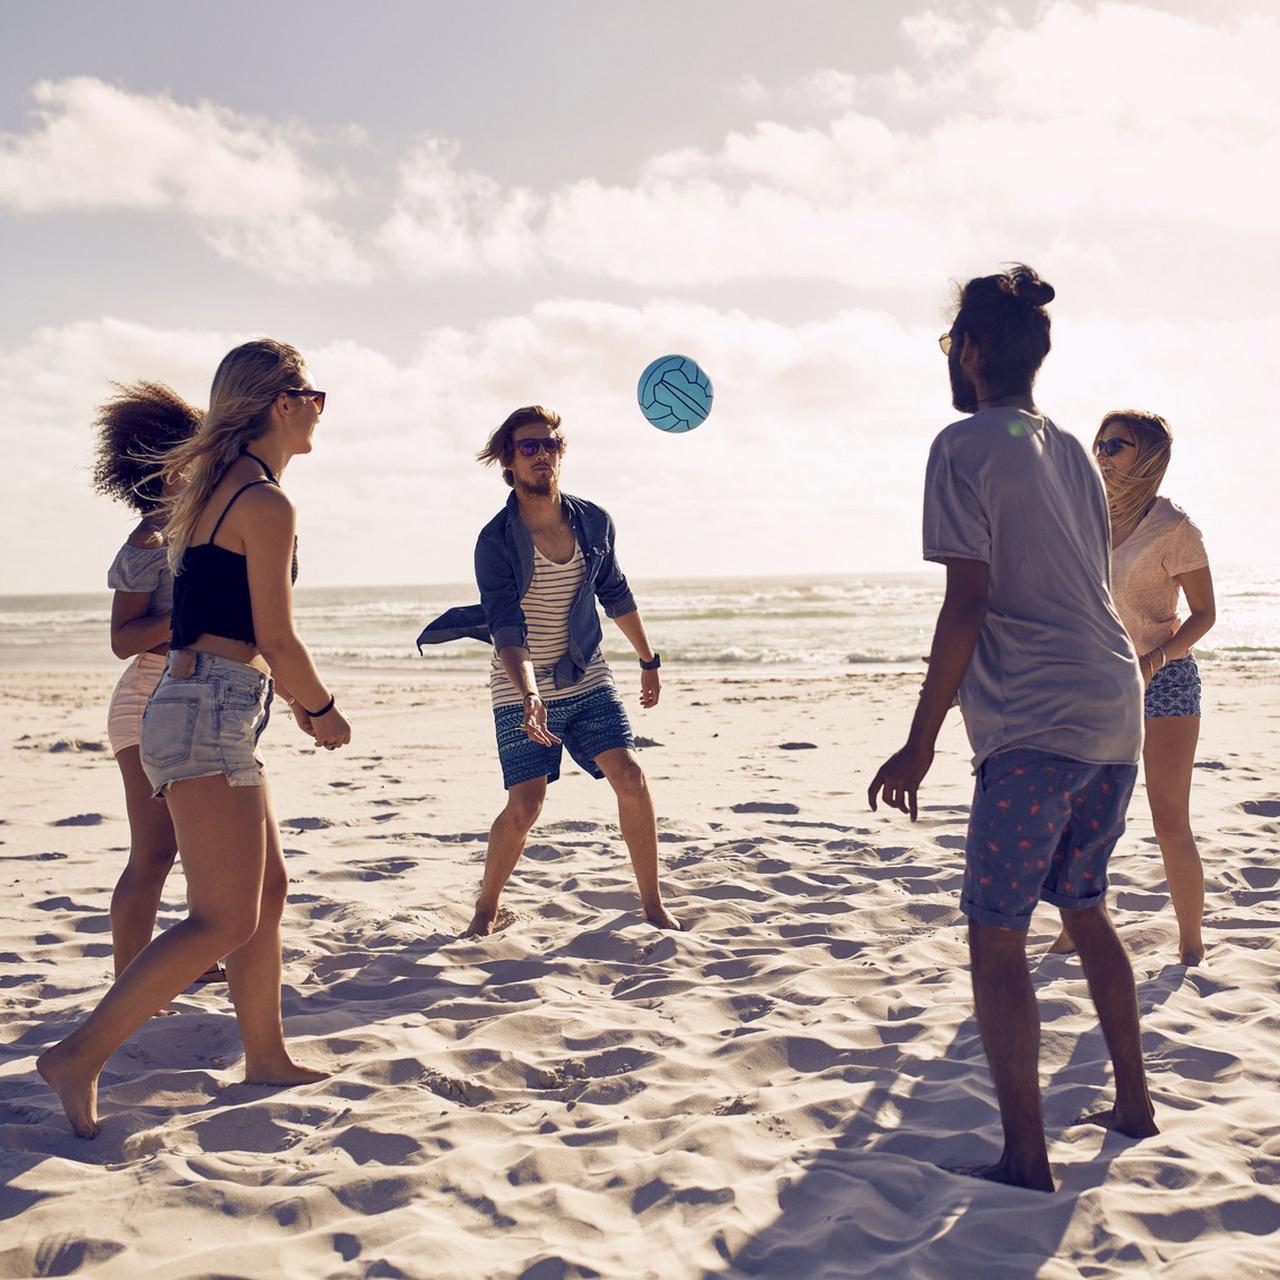 Vacances d’été, comment rester actif sur la plage ?